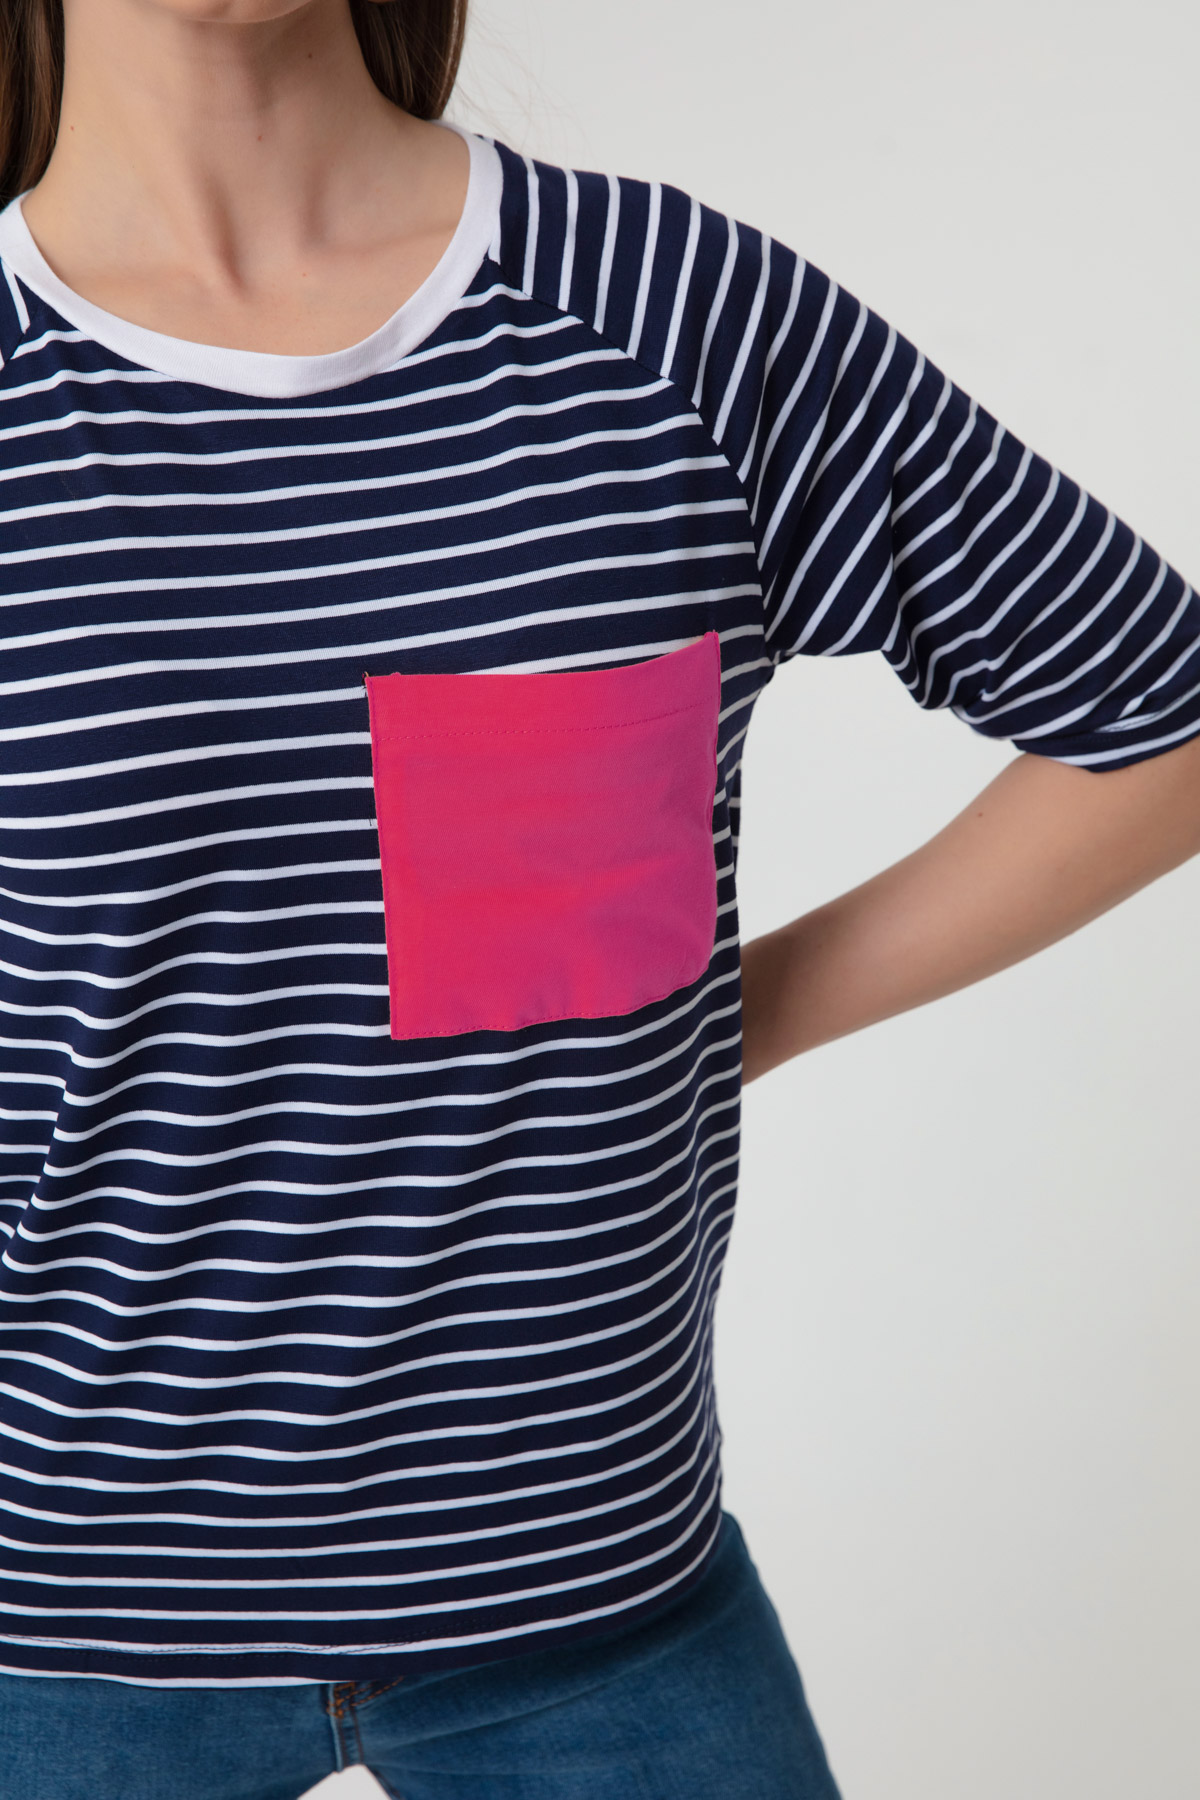 Women's Fuchsia Striped T-Shirt